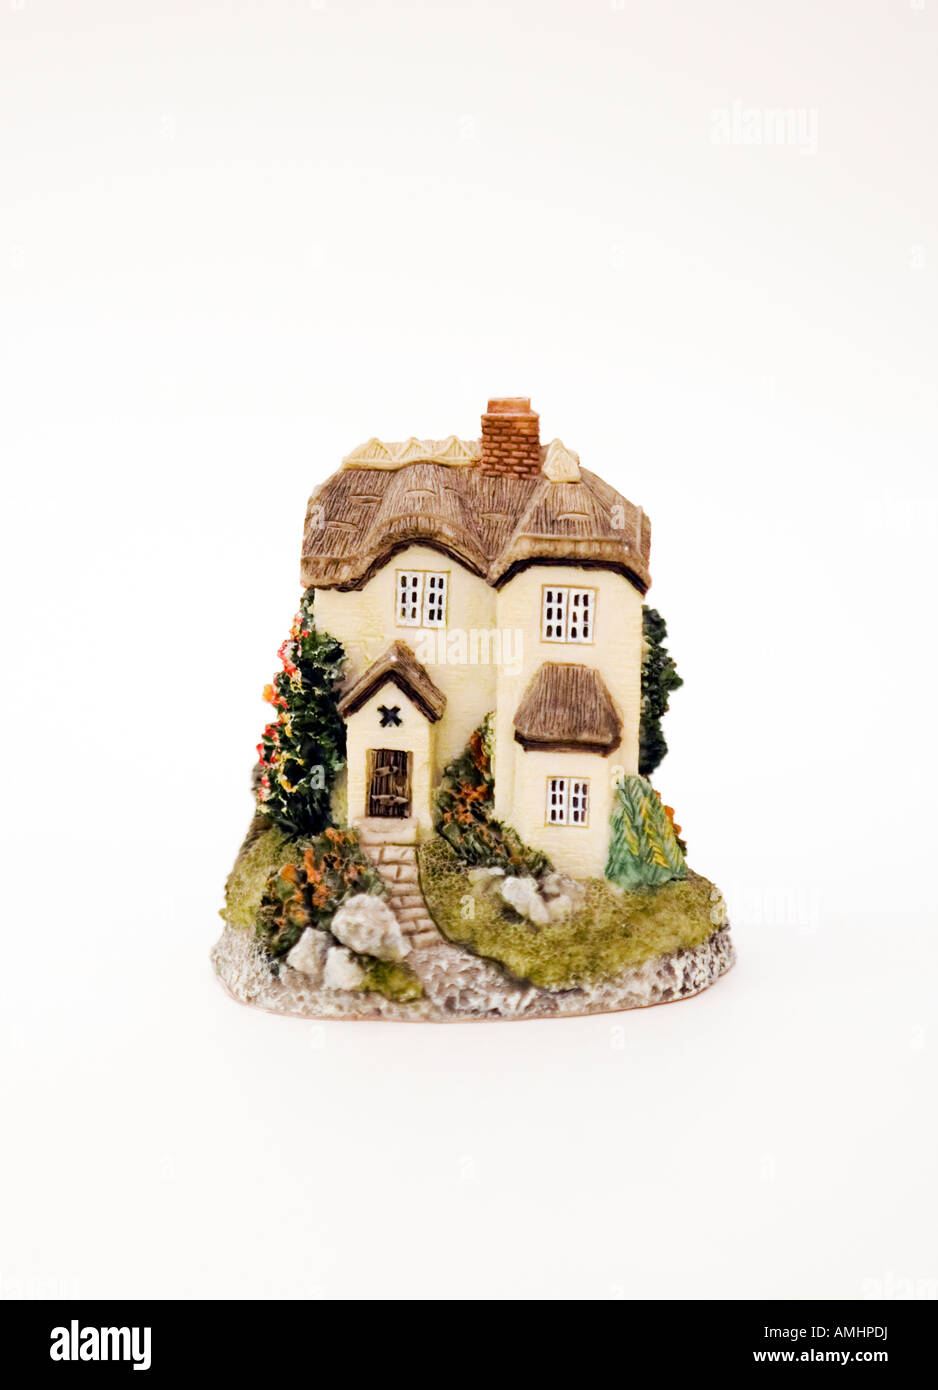 Modellhaus / Hütte ornament auf weißem Hintergrund Stockfoto